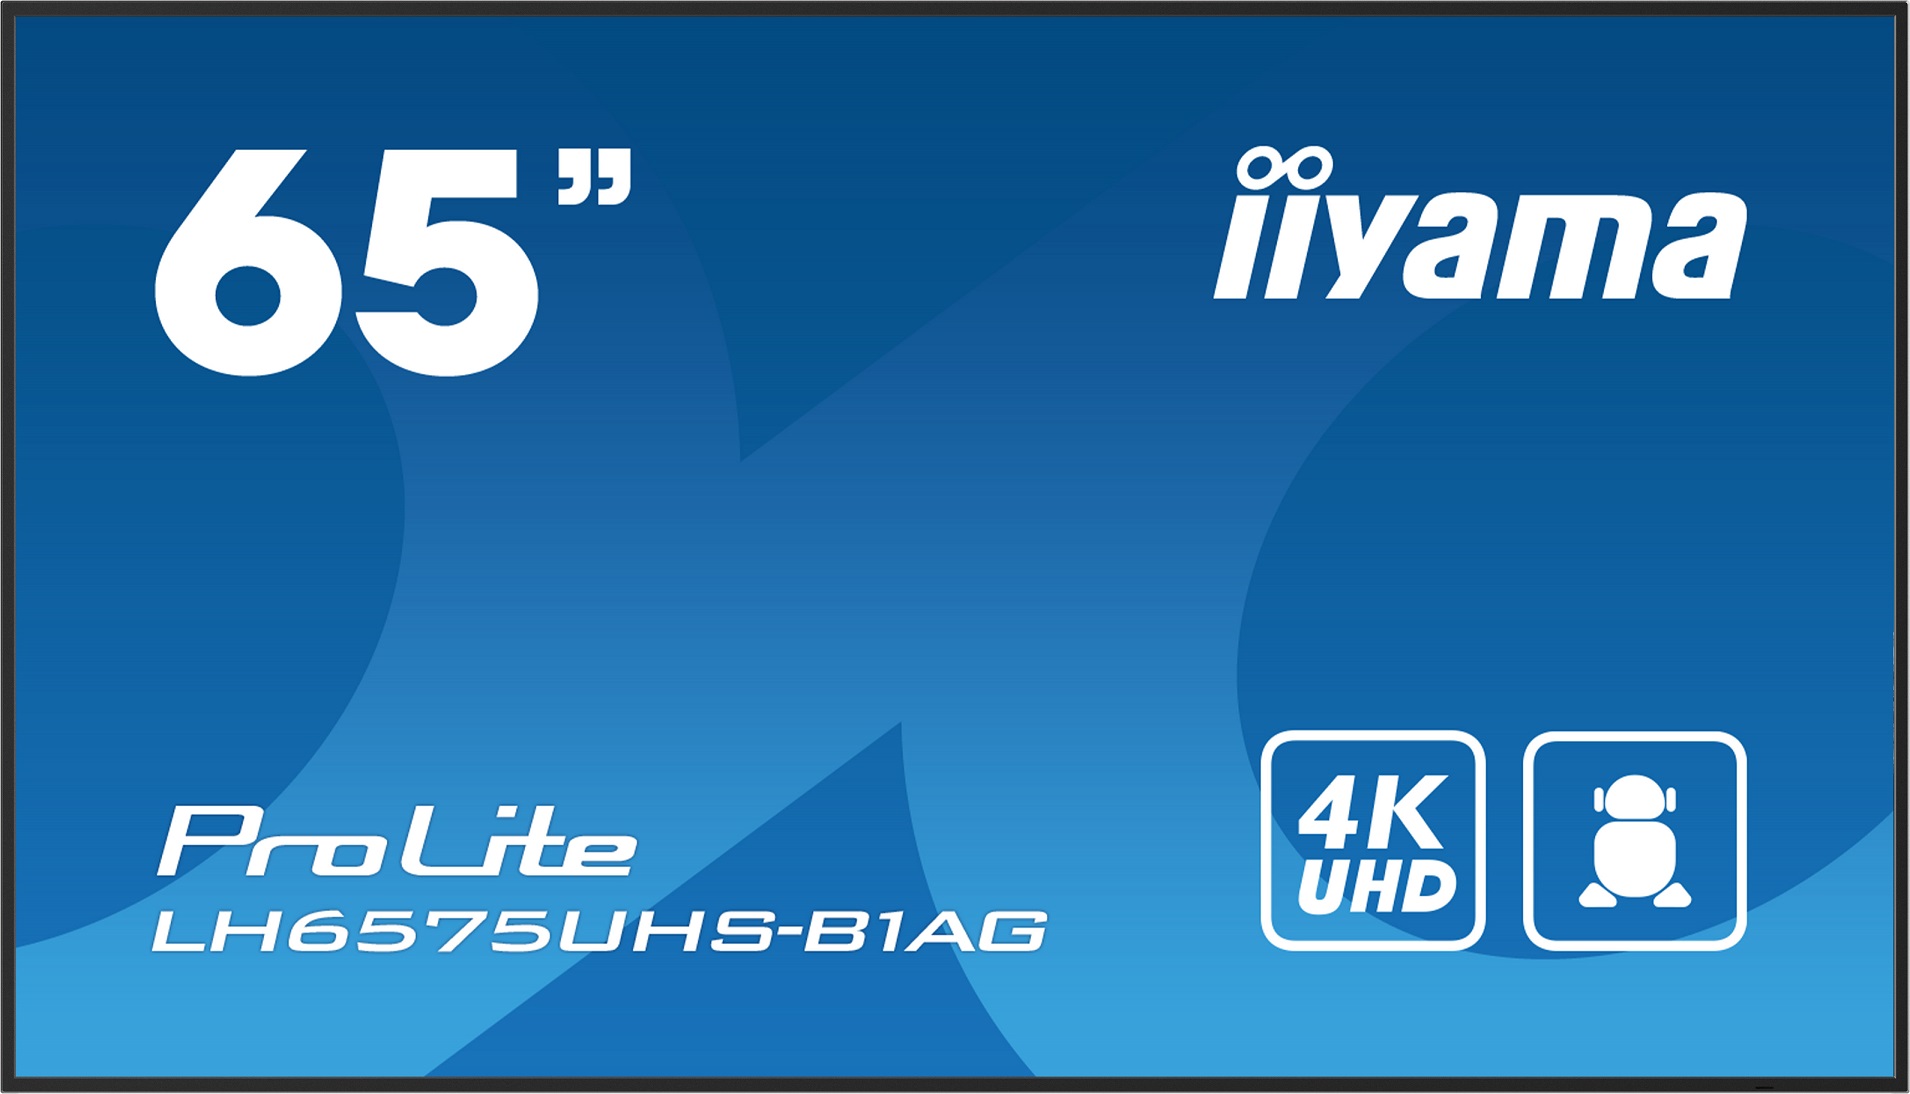 65'' iiyama LH6575UHS-B1AG: IPS,4K UHD,Android,24/7